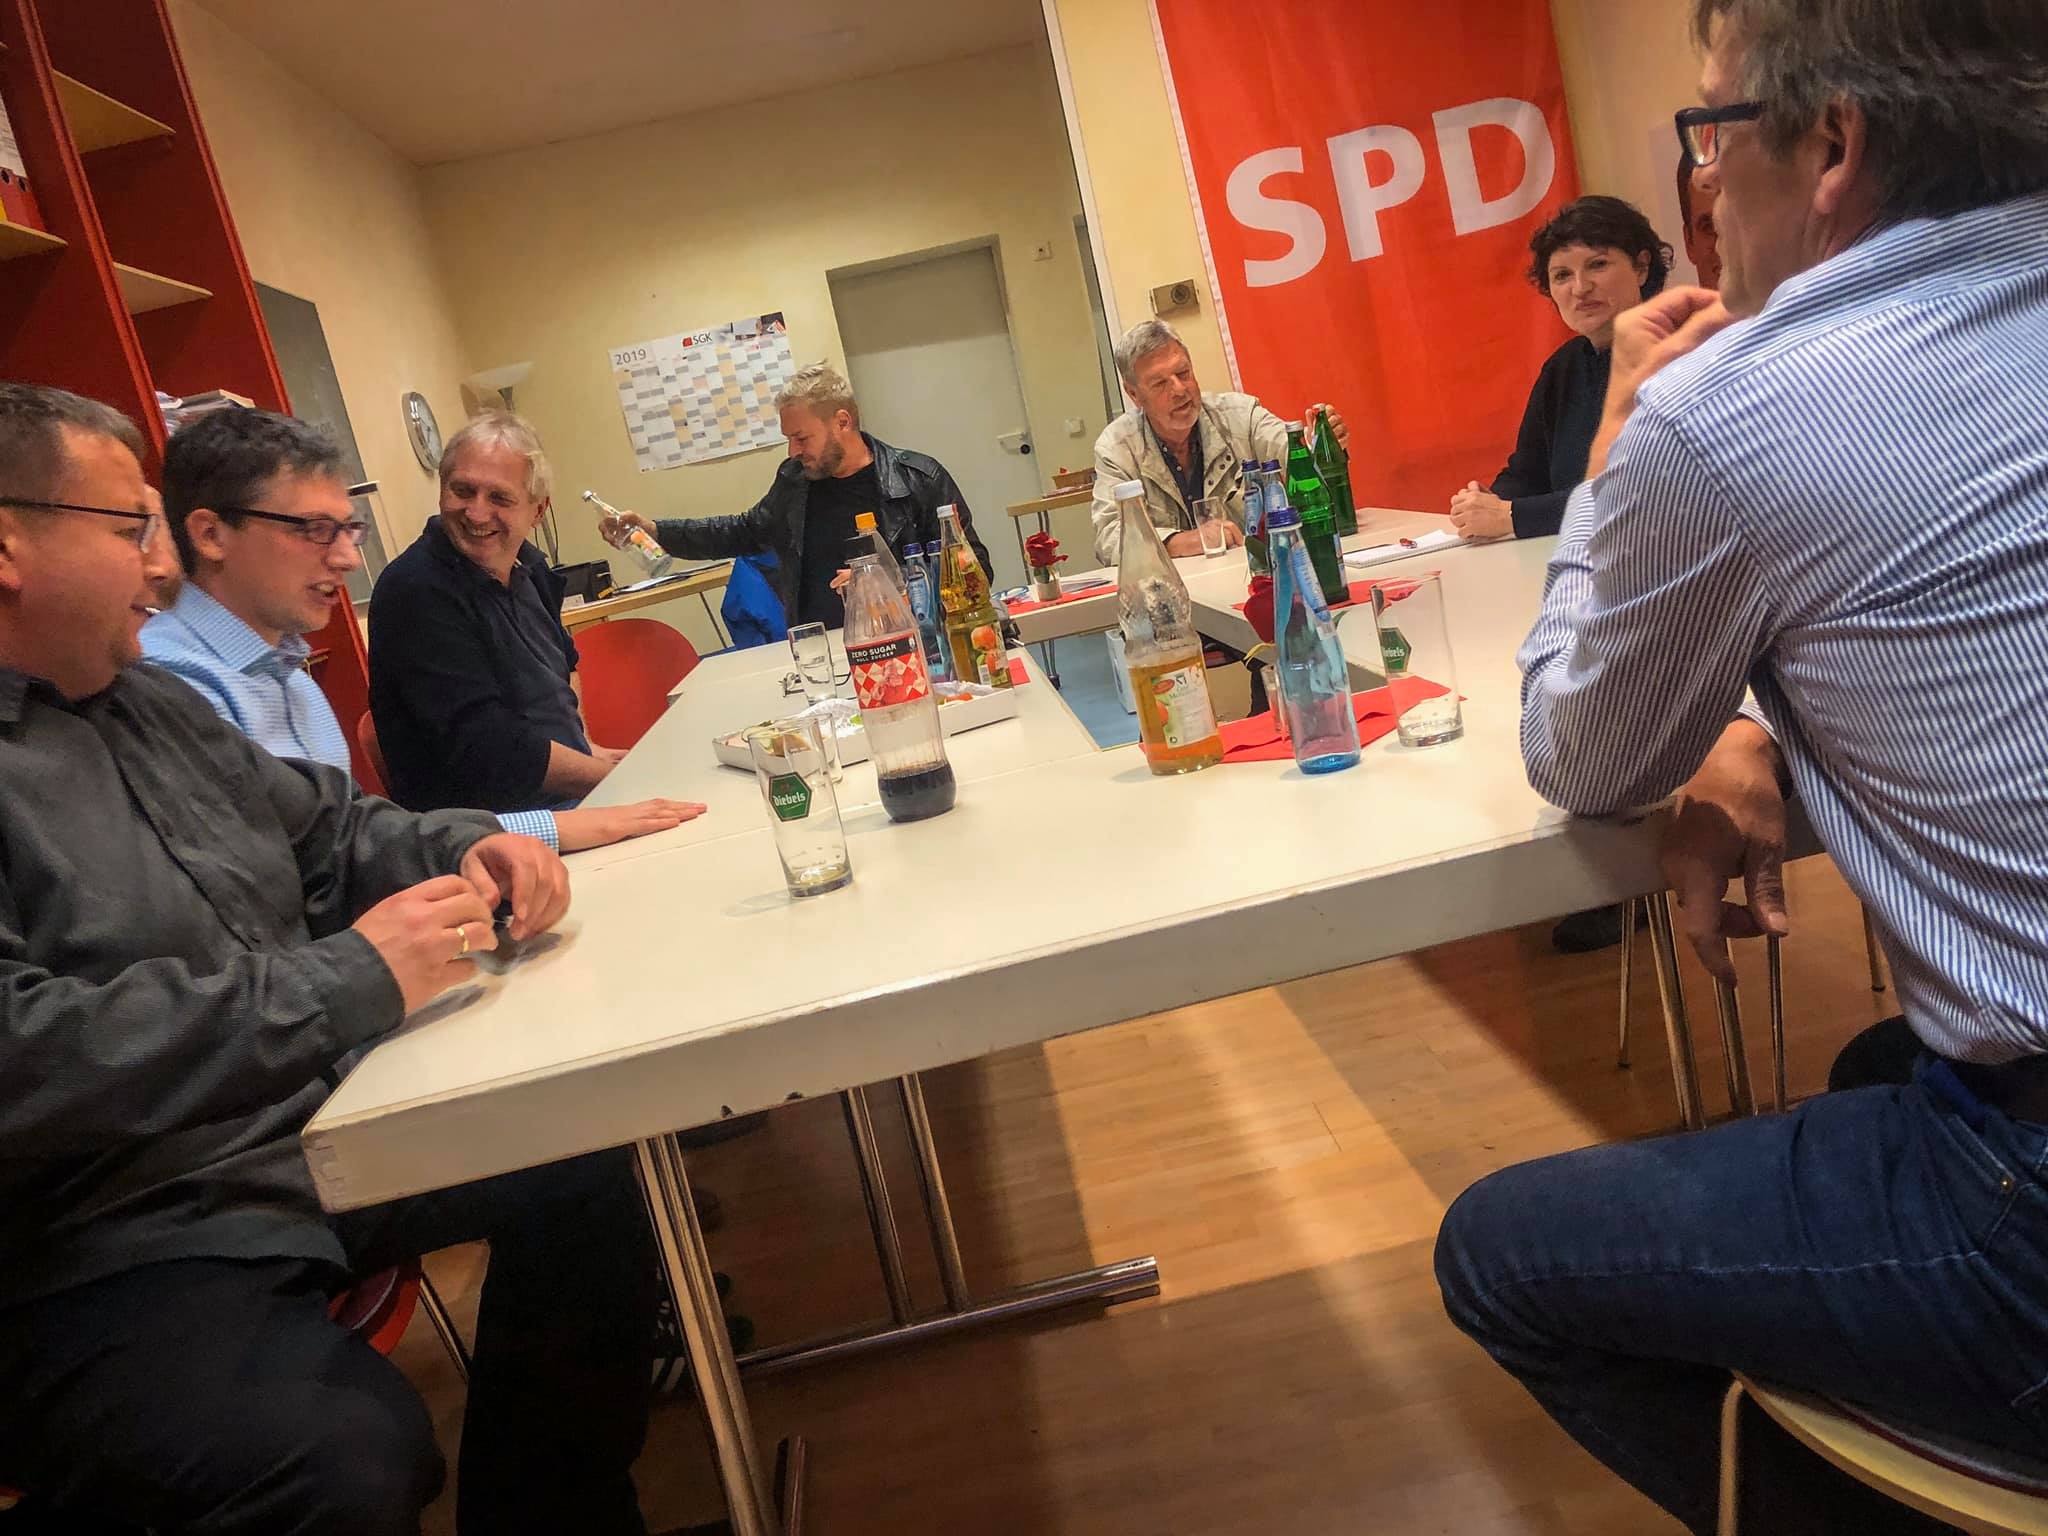 Diskussion der SPD Lage, Oerlinghausen, Bad Salzuflen und Leopoldshöhe